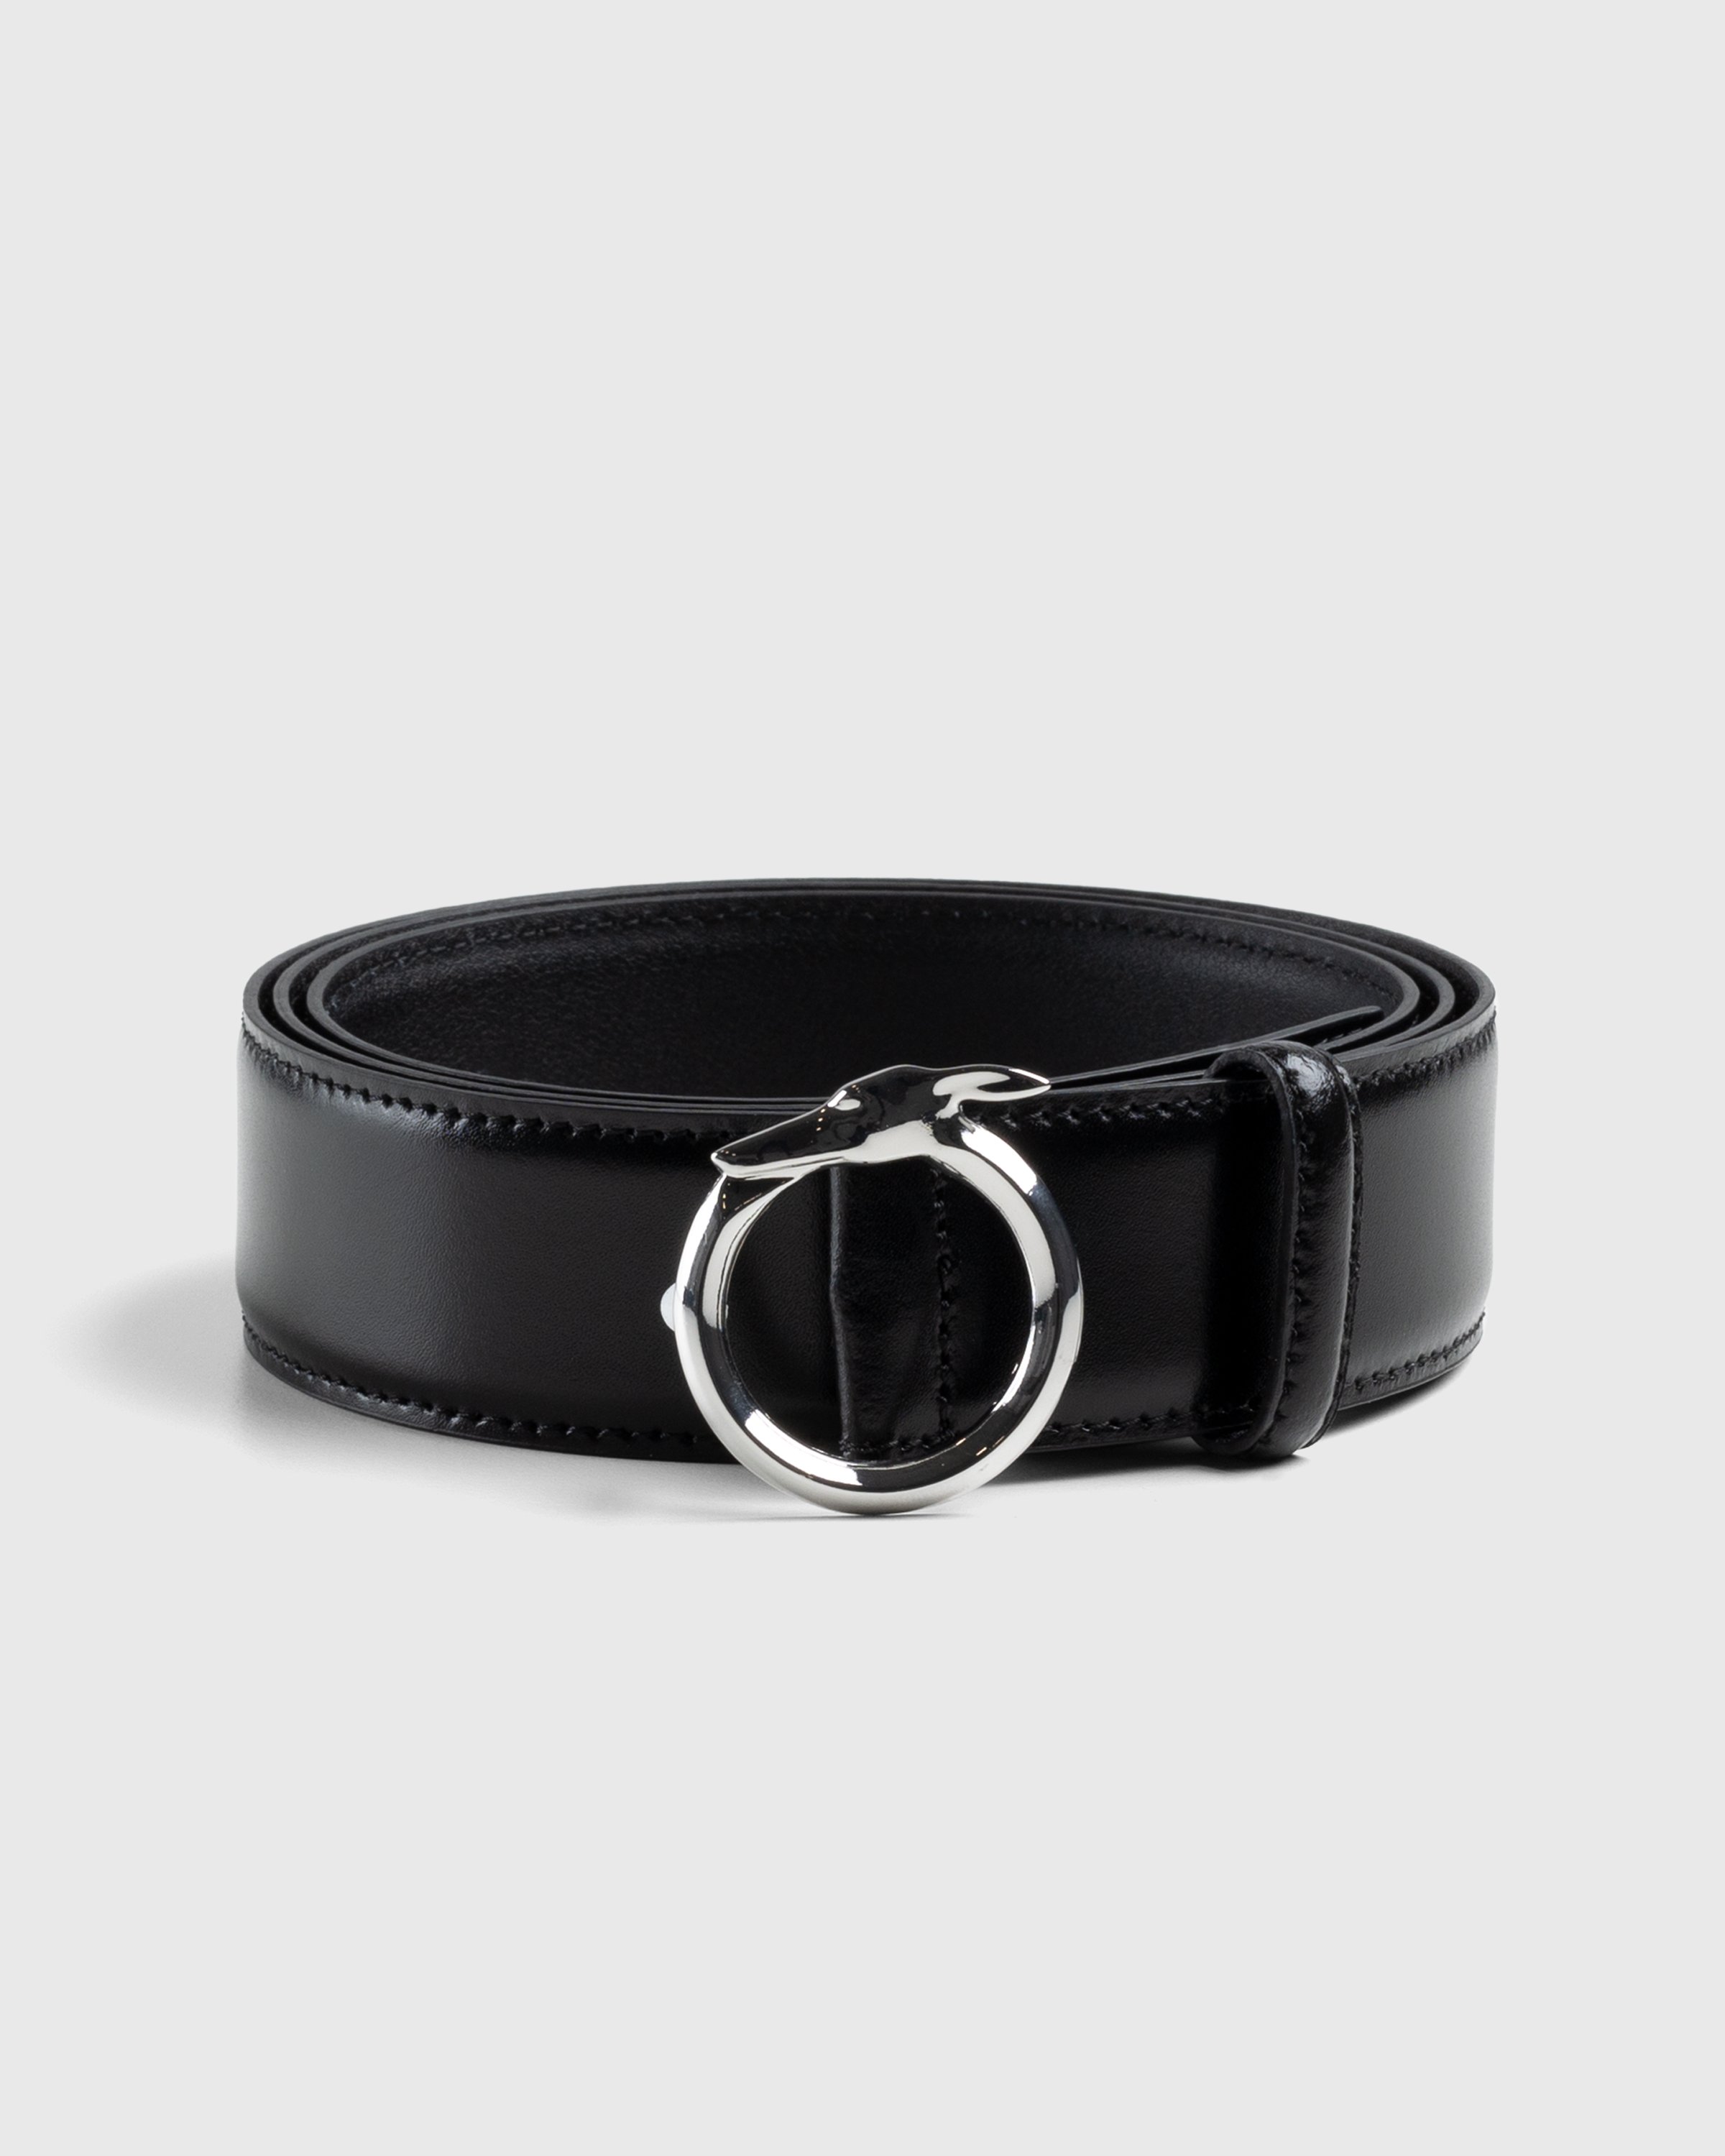 Trussardi - Leather Greyhound Belt Black - Accessories - Black - Image 1